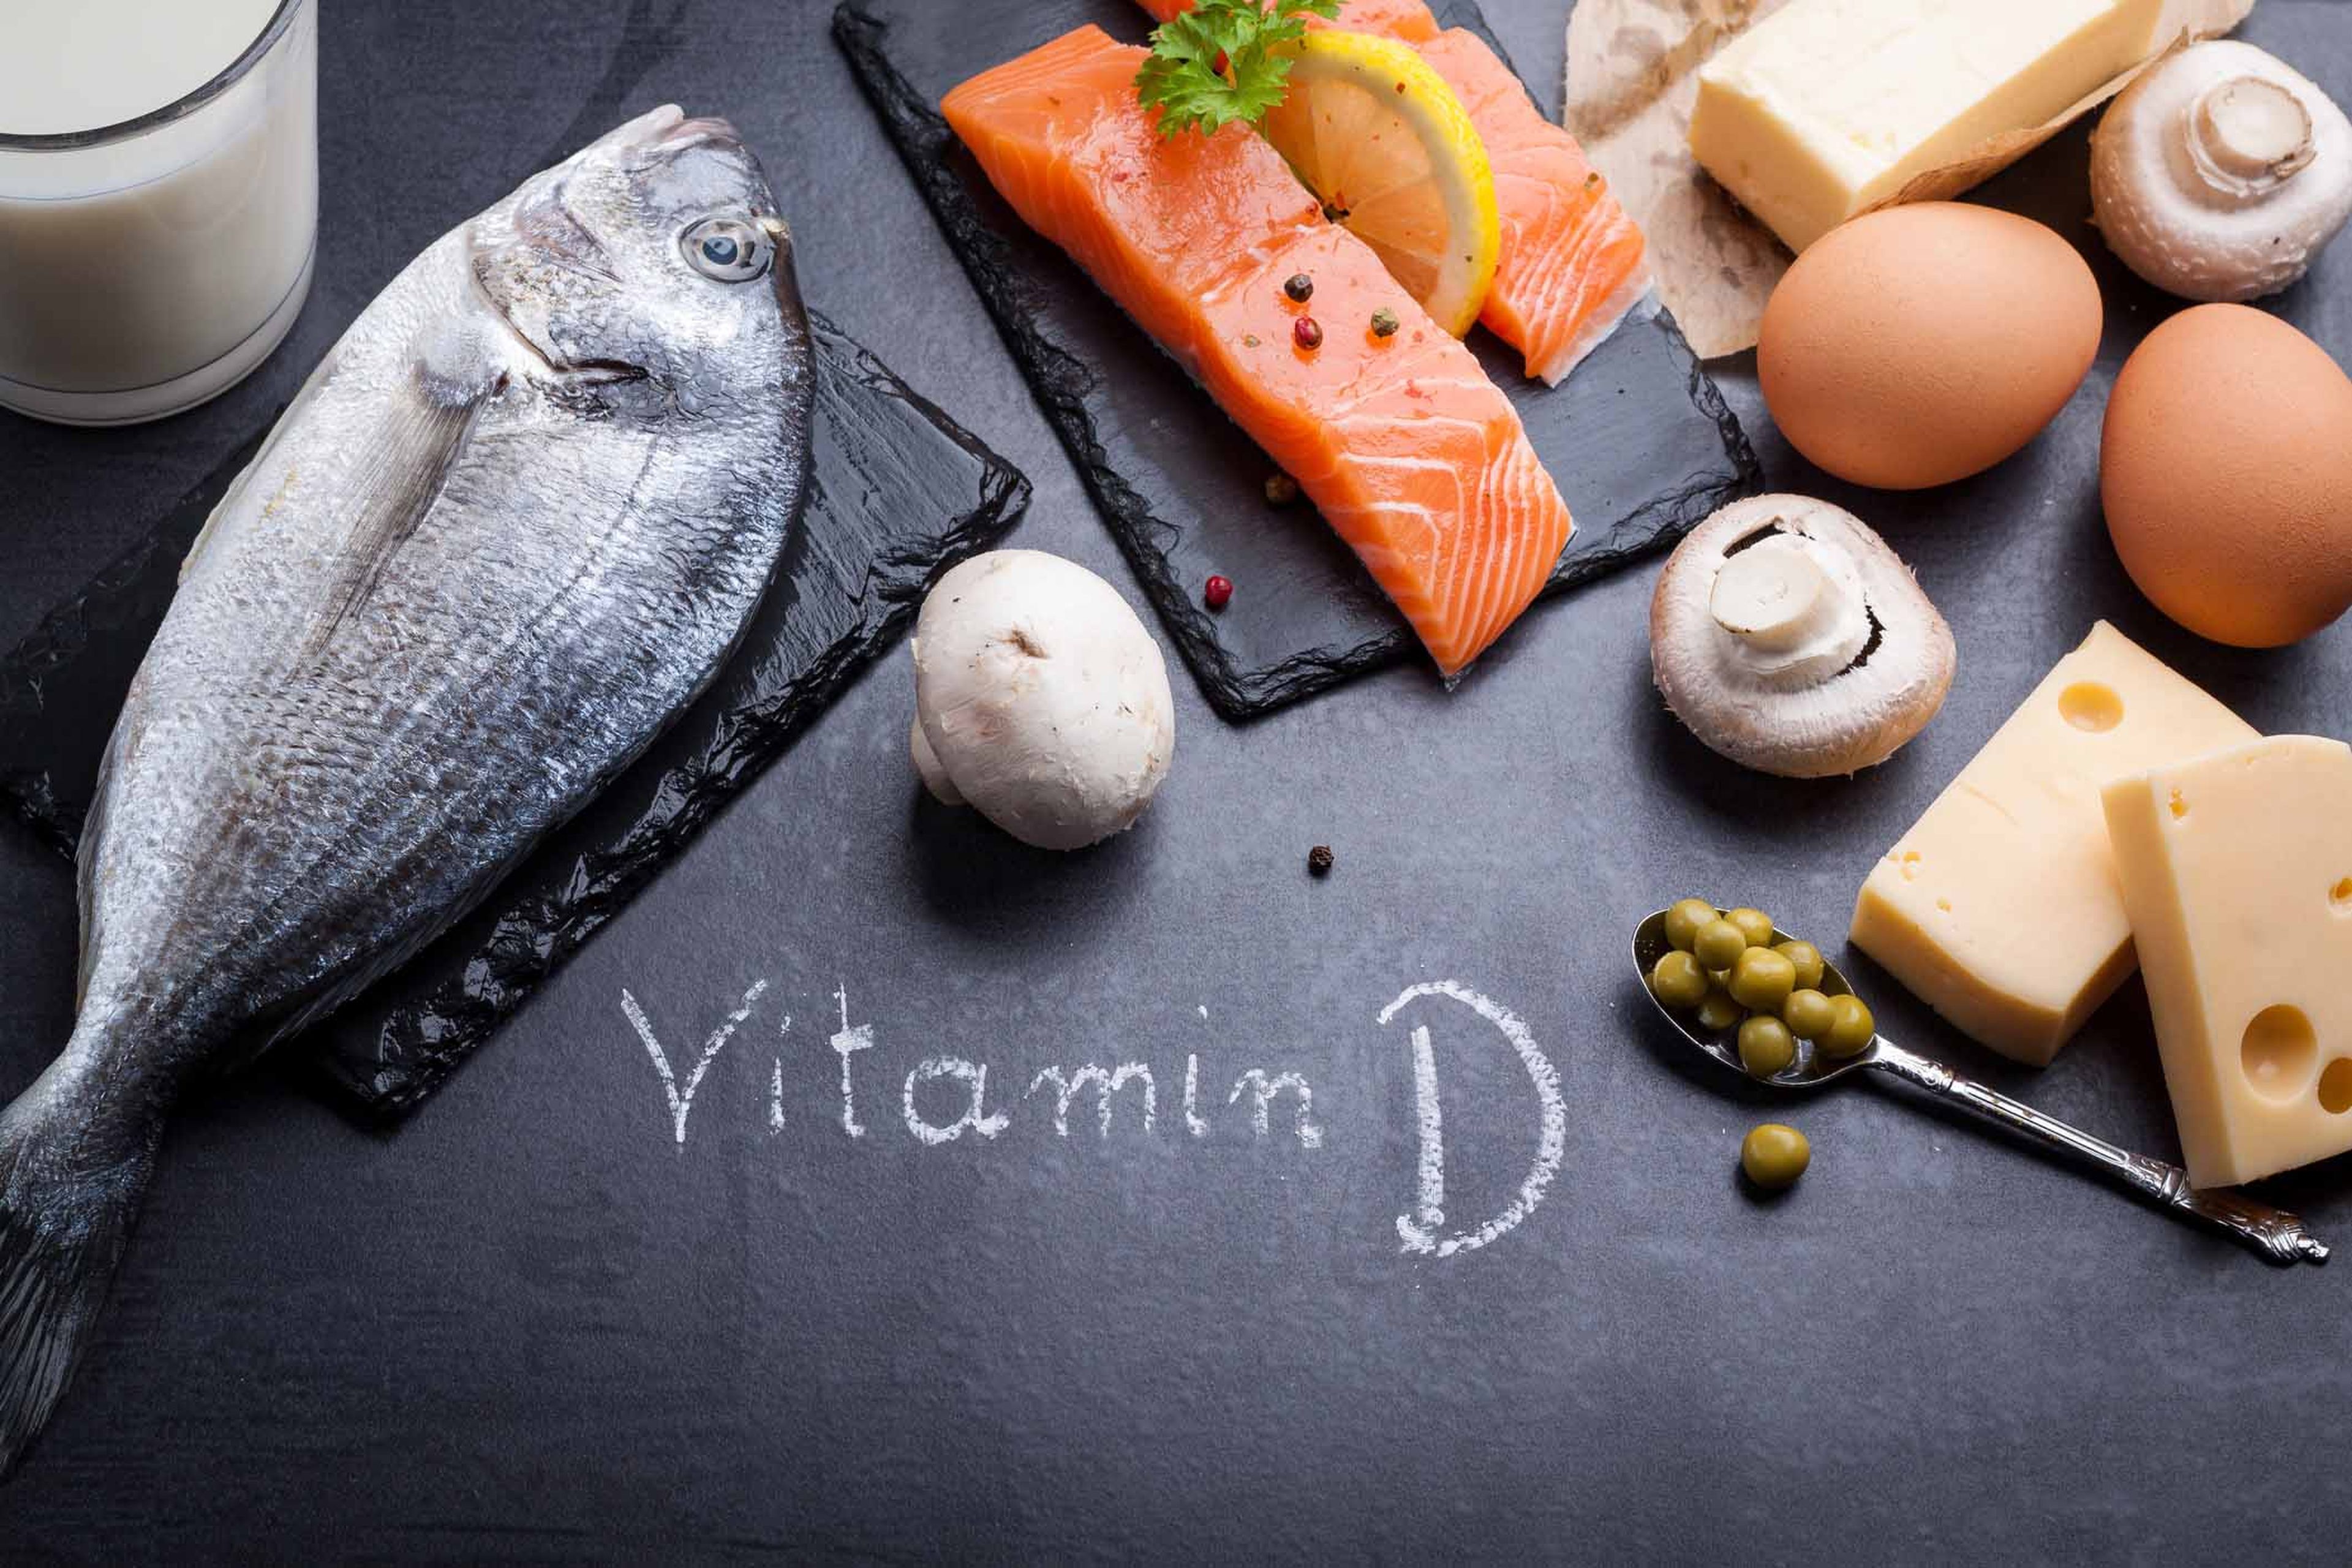 Alimentos con vitamina D